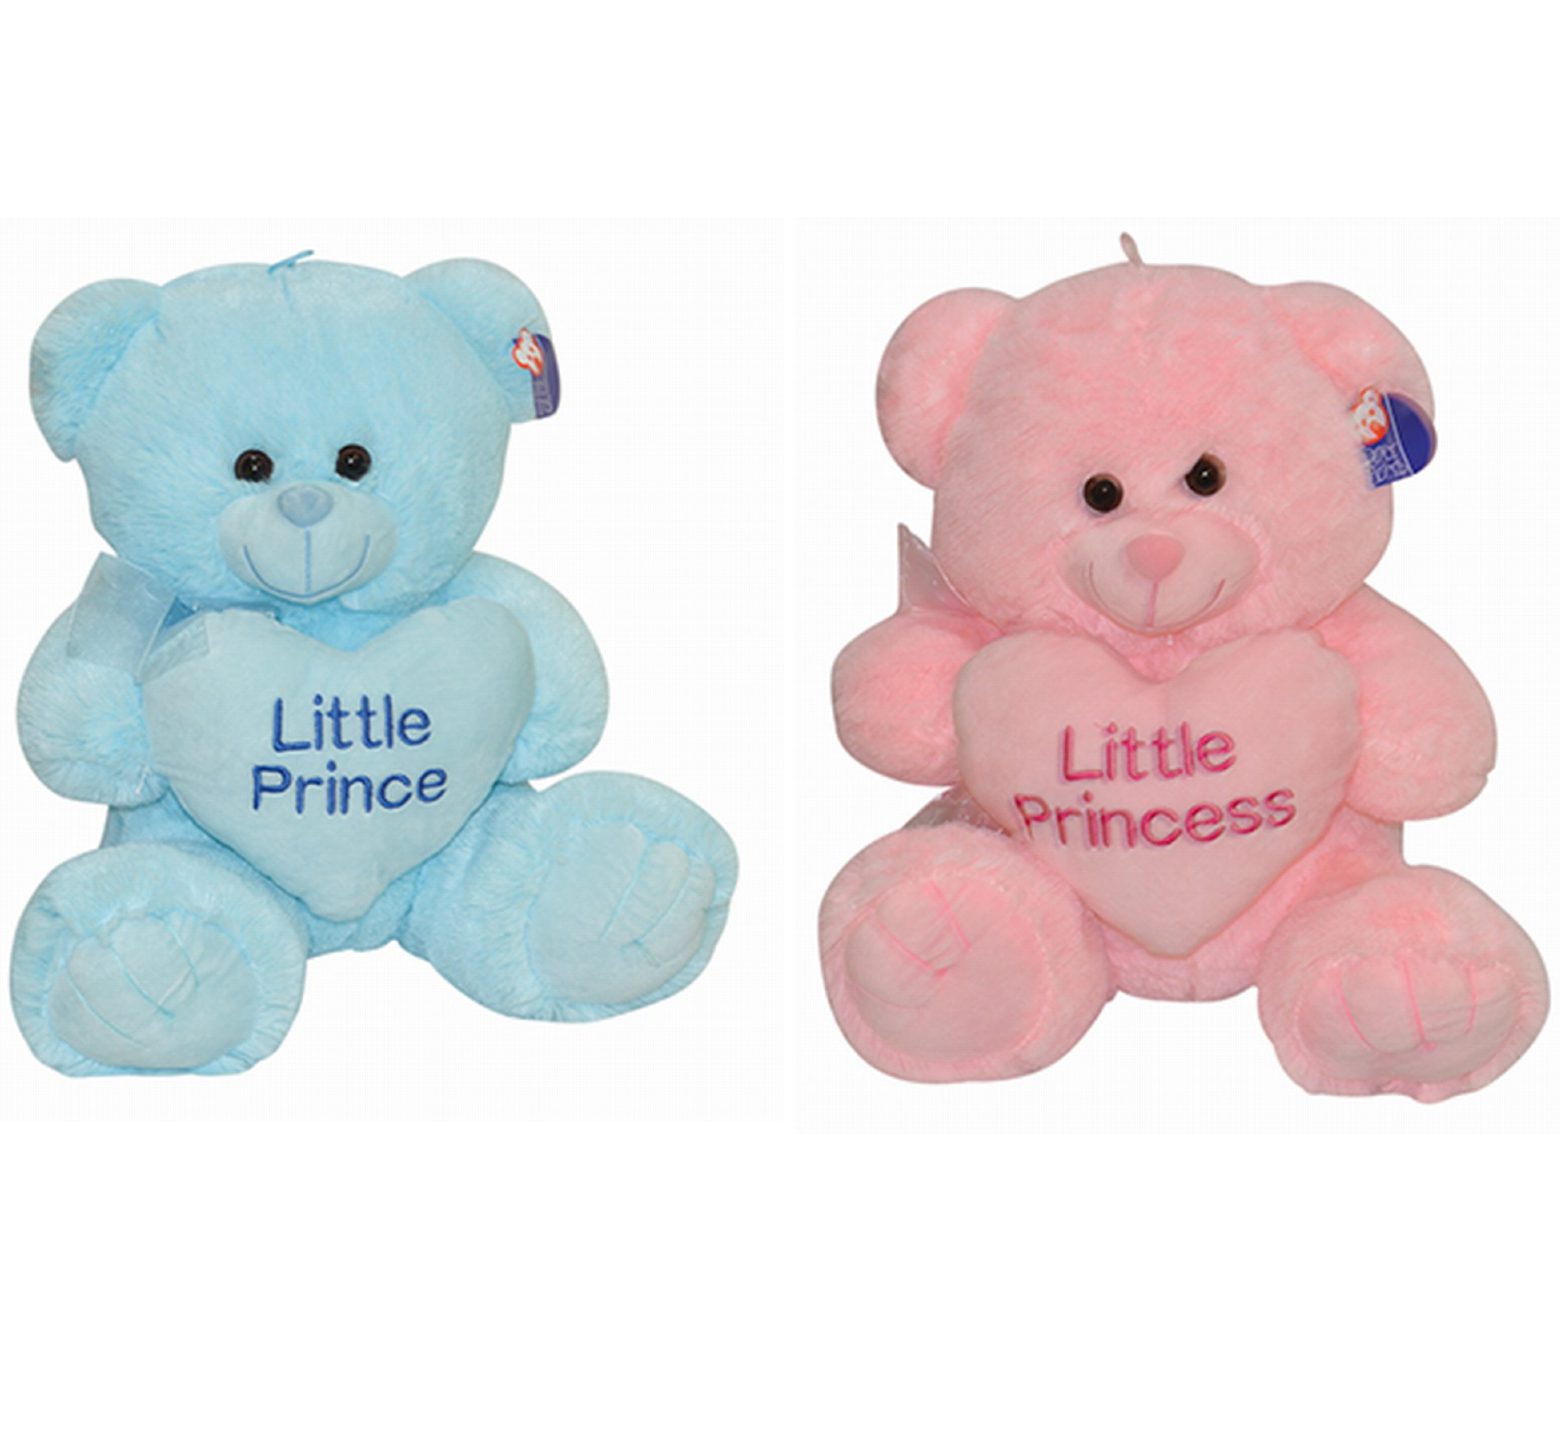 Λούτρινος καθιστός αρκούδος 25 ή 35 εκ ύψος σε 2 χρώματα μπλε ή ροζ που κρατάει καρδιά που γράφει "little prince" και "little princess"